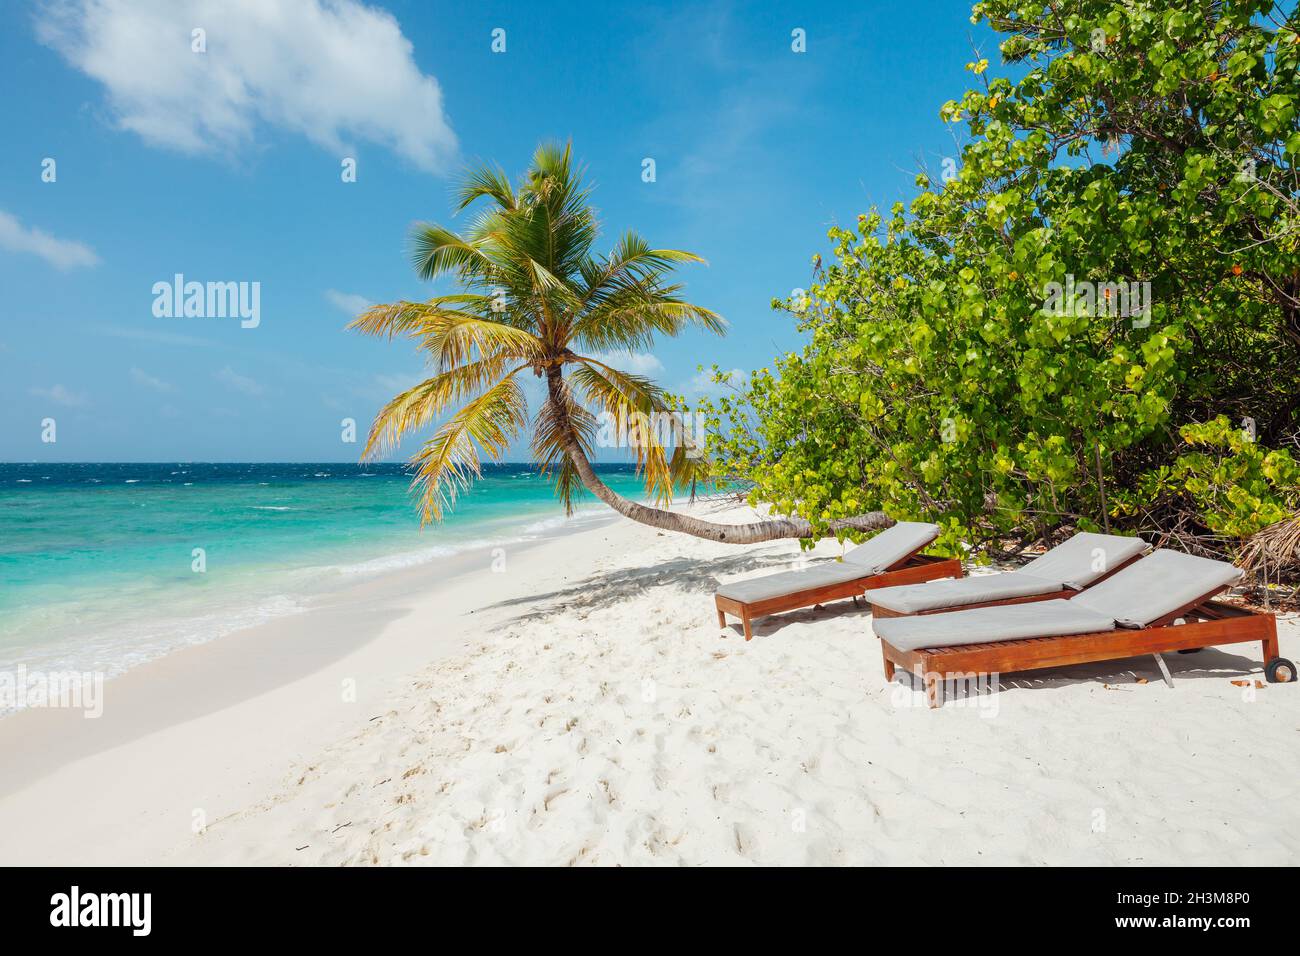 Idyllic beach scene in Maldives, North Male Atoll Stock Photo